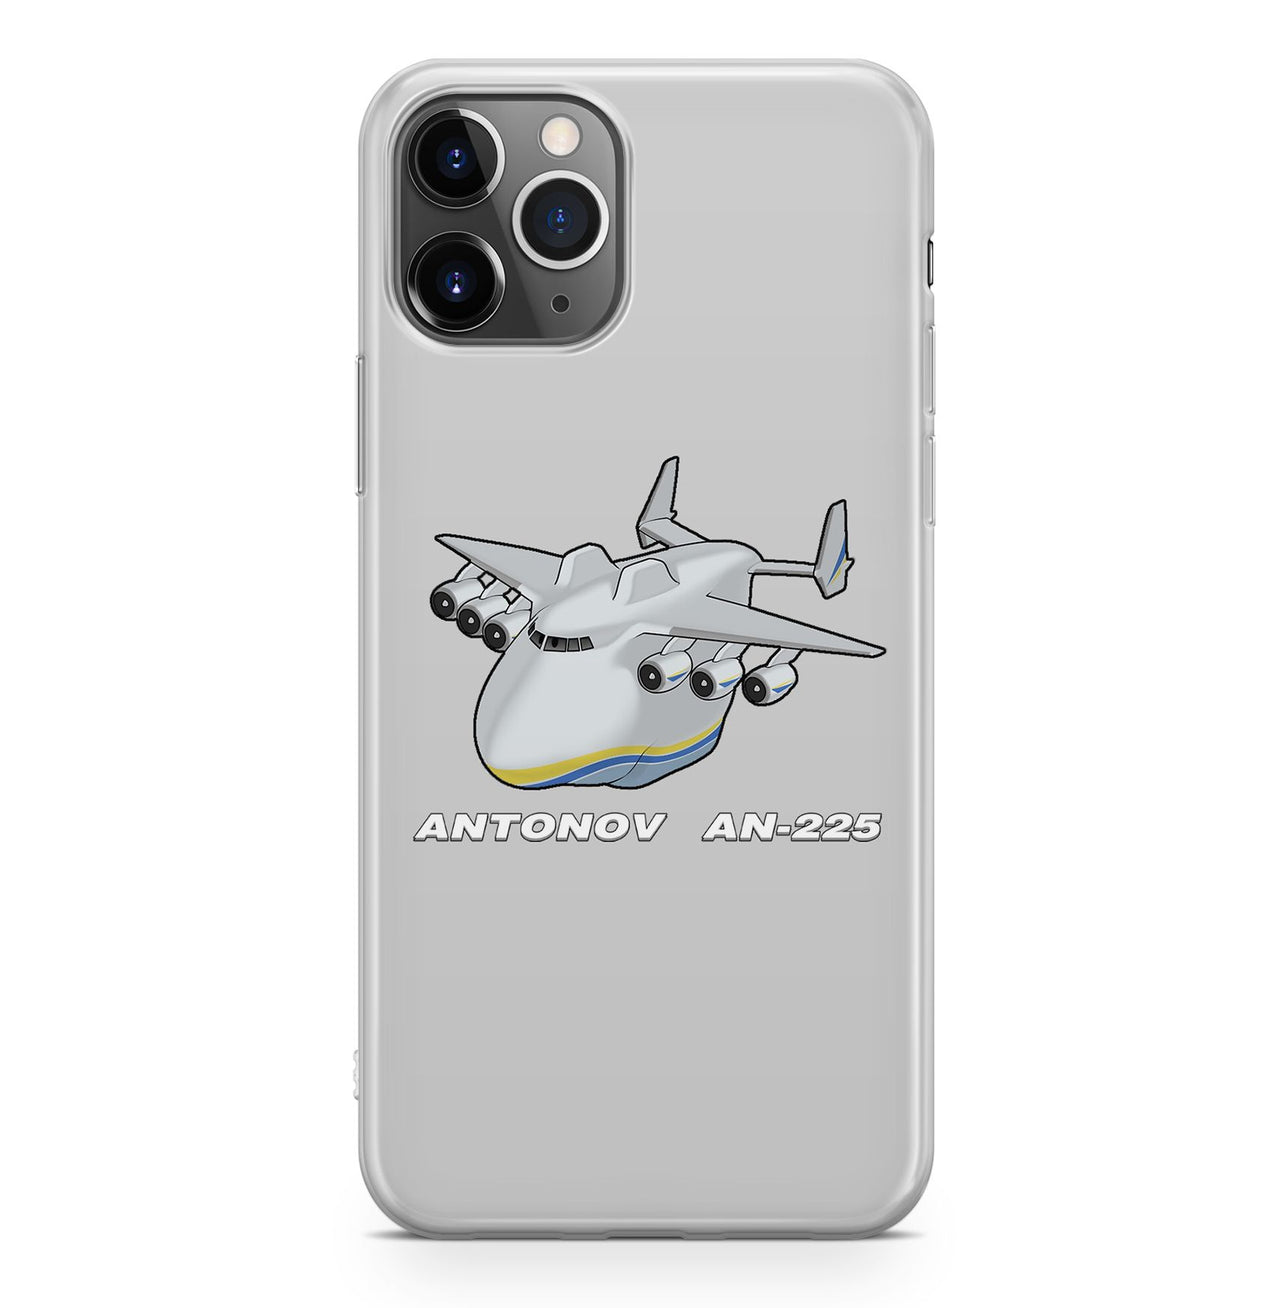 Antonov AN-225 (29) Designed iPhone Cases